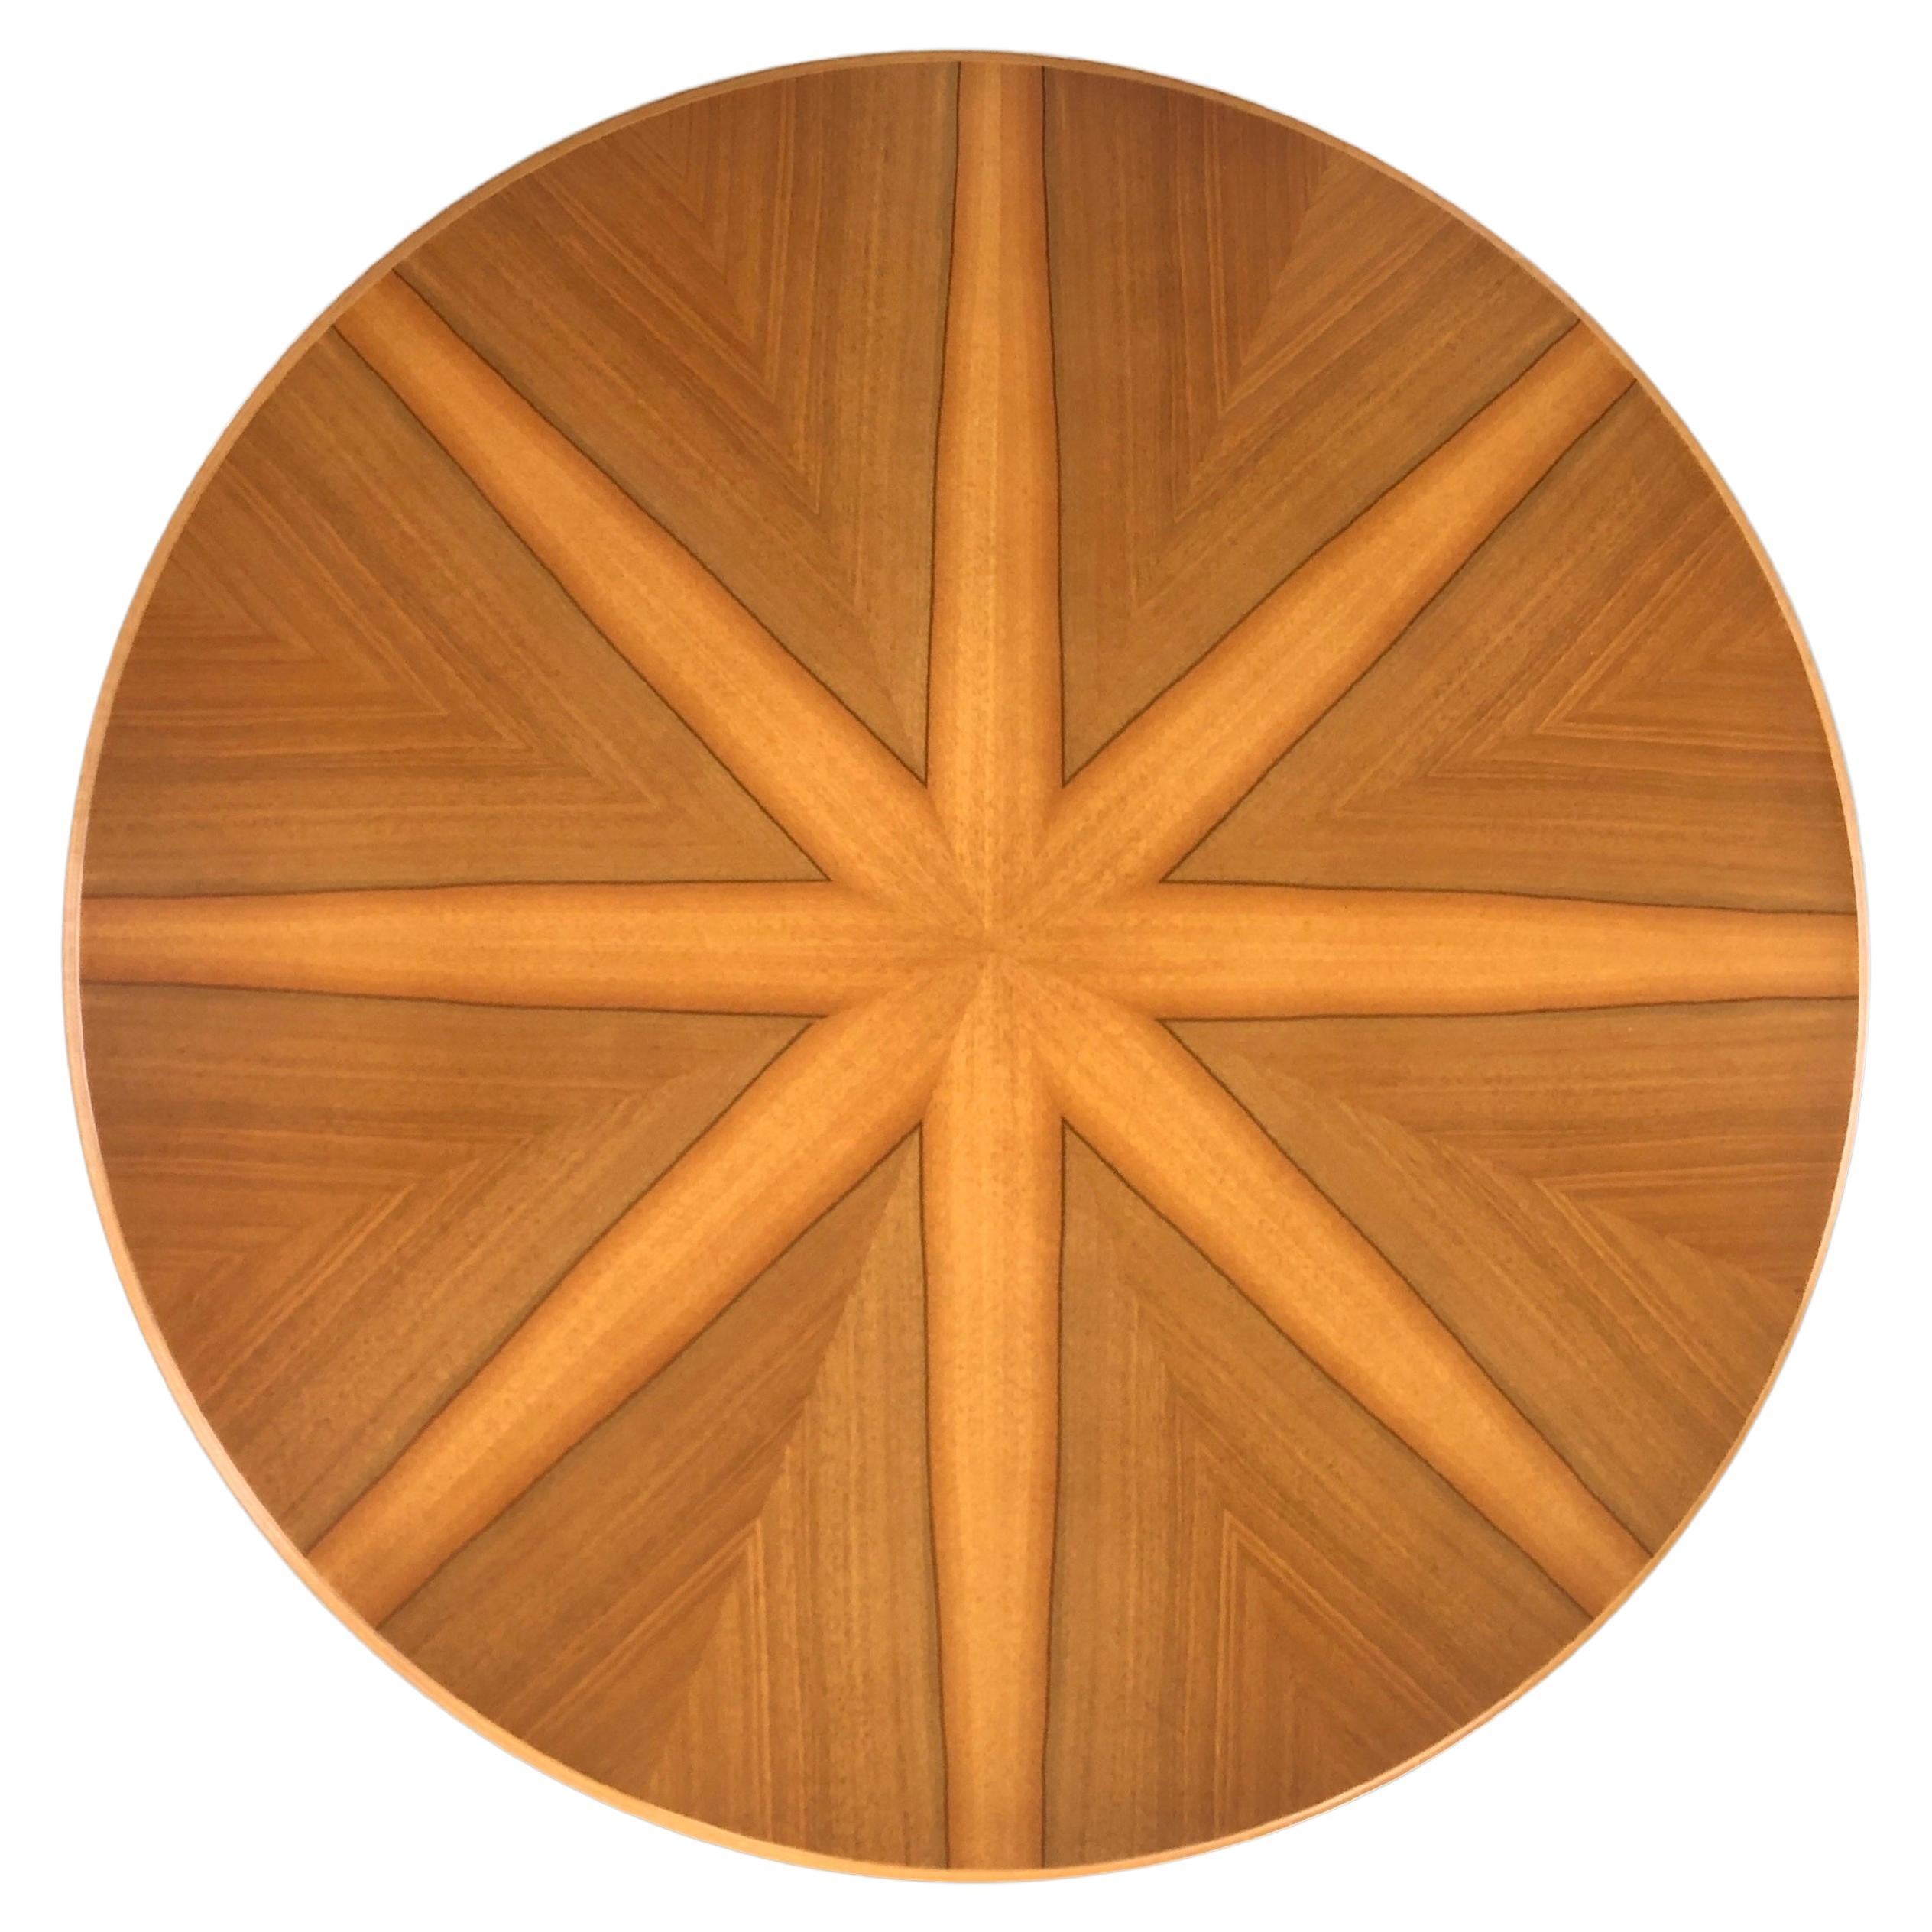 Ein schönes Stück Design aus der Mitte des Jahrhunderts ist dieser wunderschön gearbeitete niedrige Tisch.
Wunderschön verarbeitetes Walnussholz in verschiedenen Farbtönen im Stil von Osvaldo Borsani.
Das Furnier aus echtem Nussbaumholz ist in einem